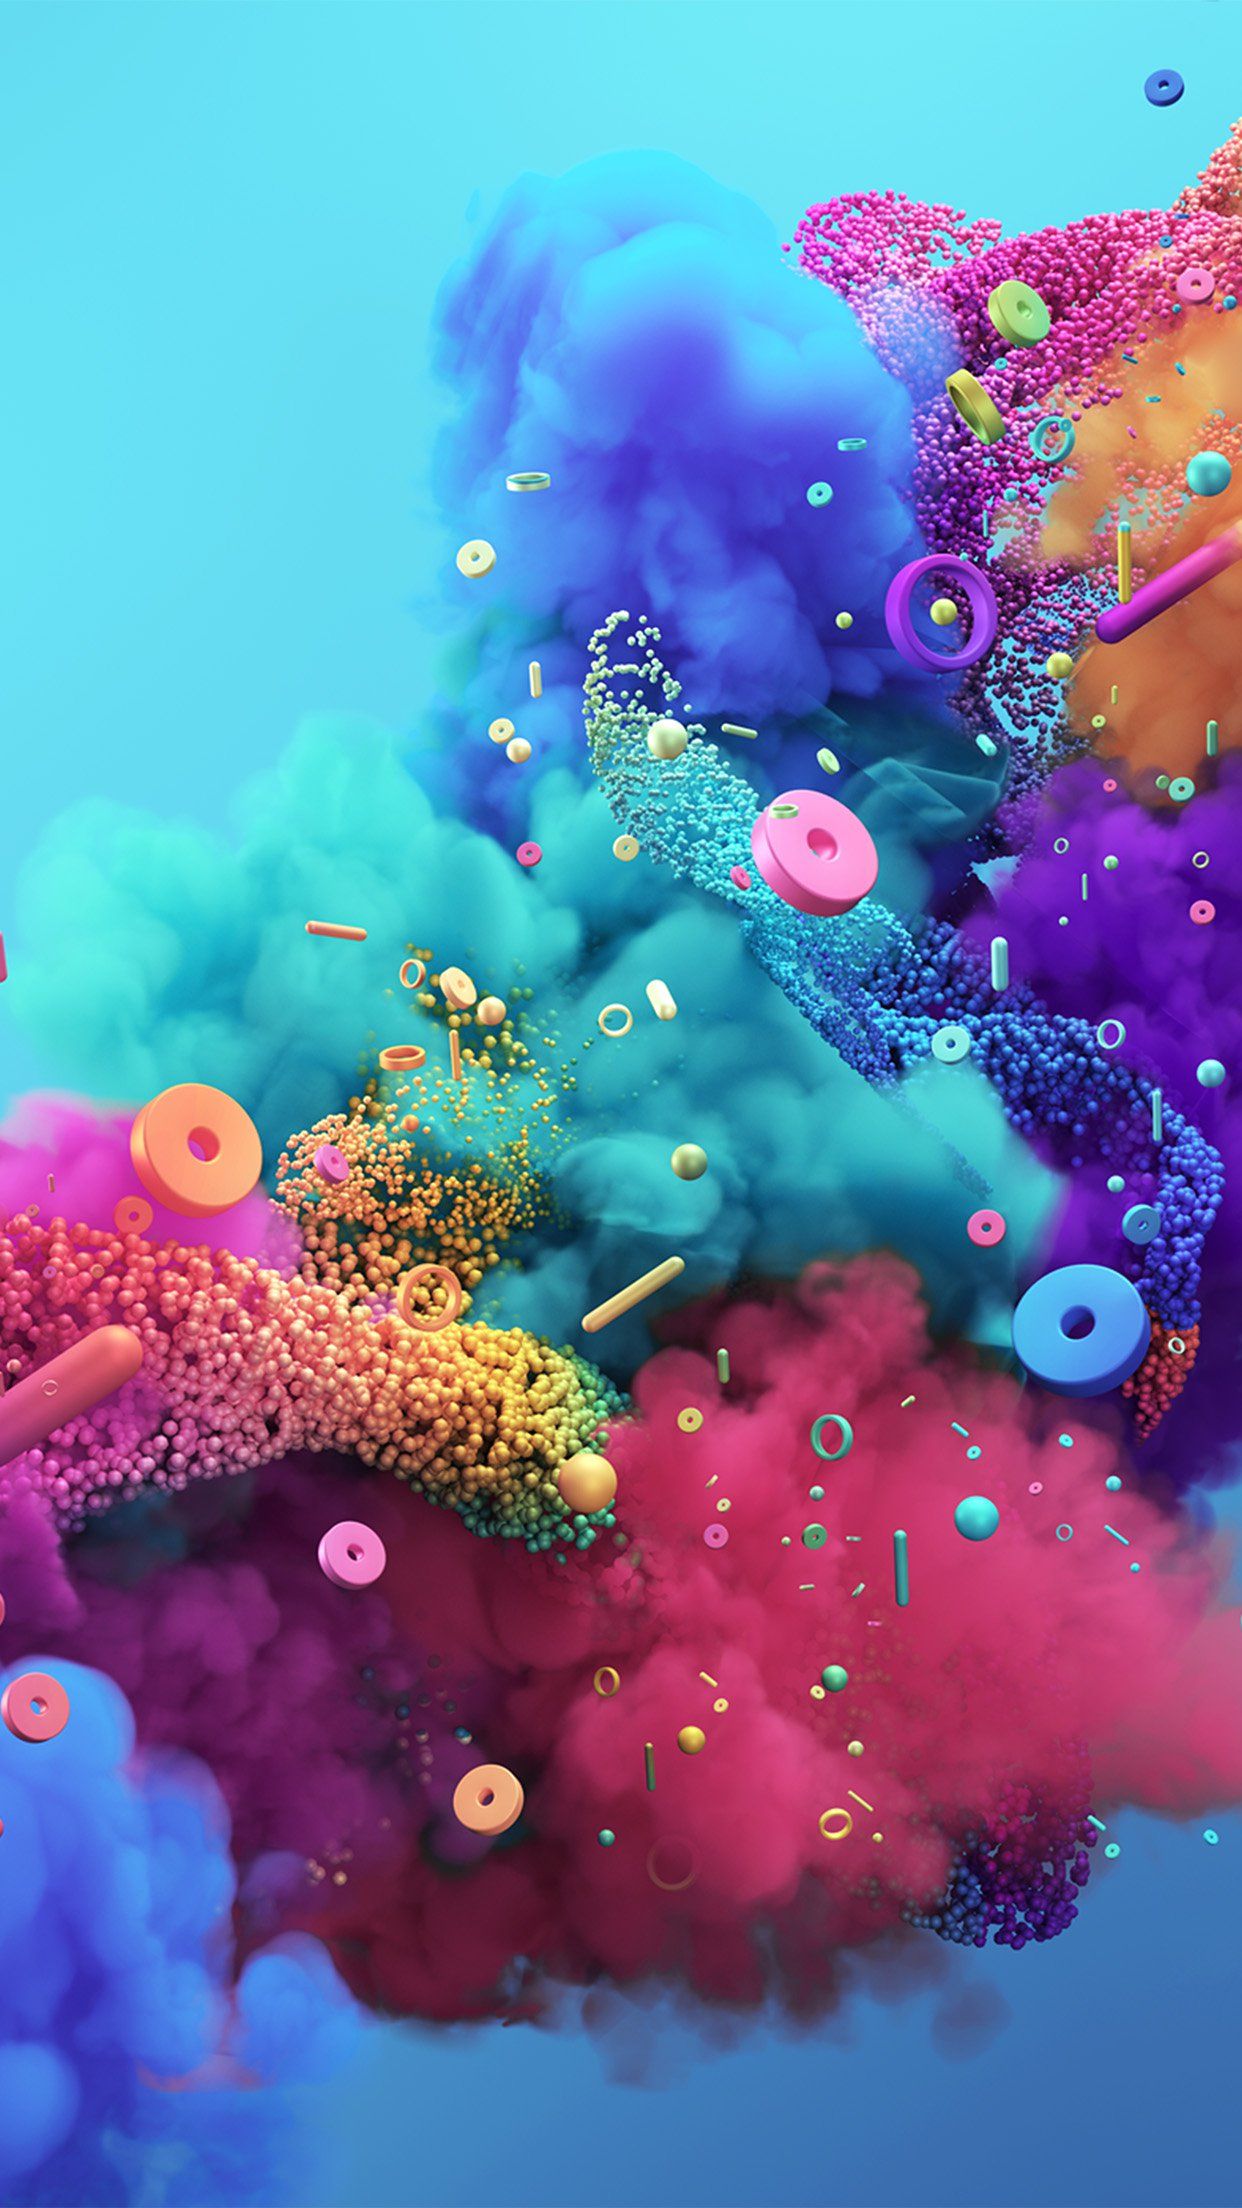 Artistic Colors 8K Digital Art Wallpapers